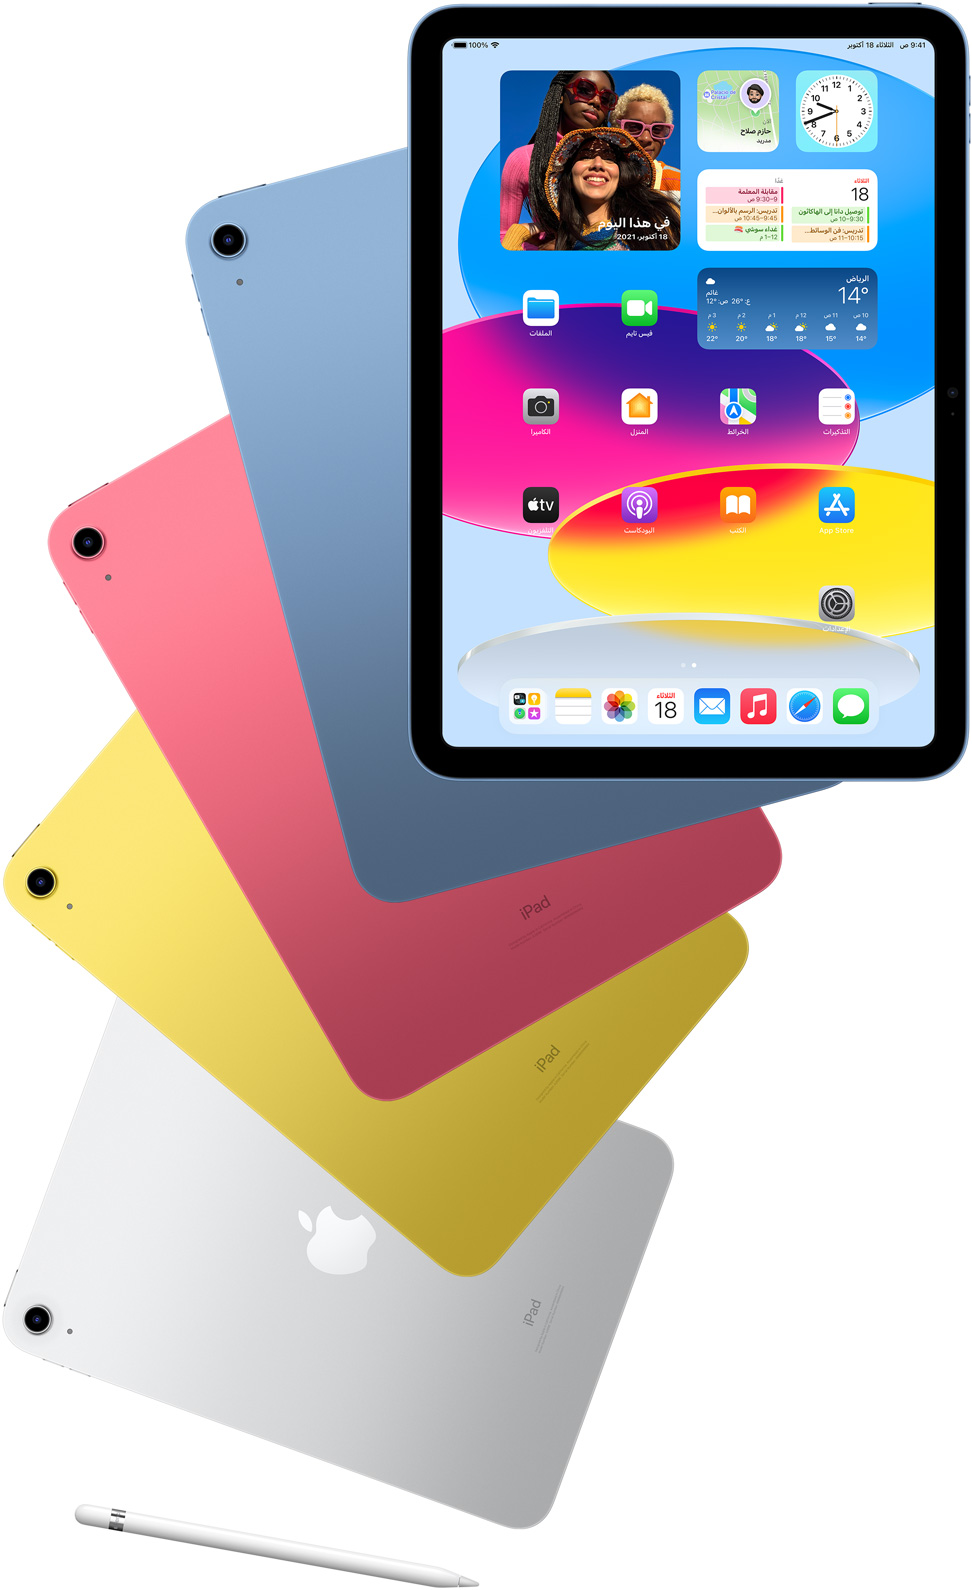 لقطة لجهاز iPad من الأمام تعرض شاشته الرئيسية، مع أجهزة iPad أخرى وراءه باللون الأزرق والوردي والأصفر والفضي تعرض جانبها الخلفي. قلم Apple موضوع بجوار تشكيلة موديلات iPad